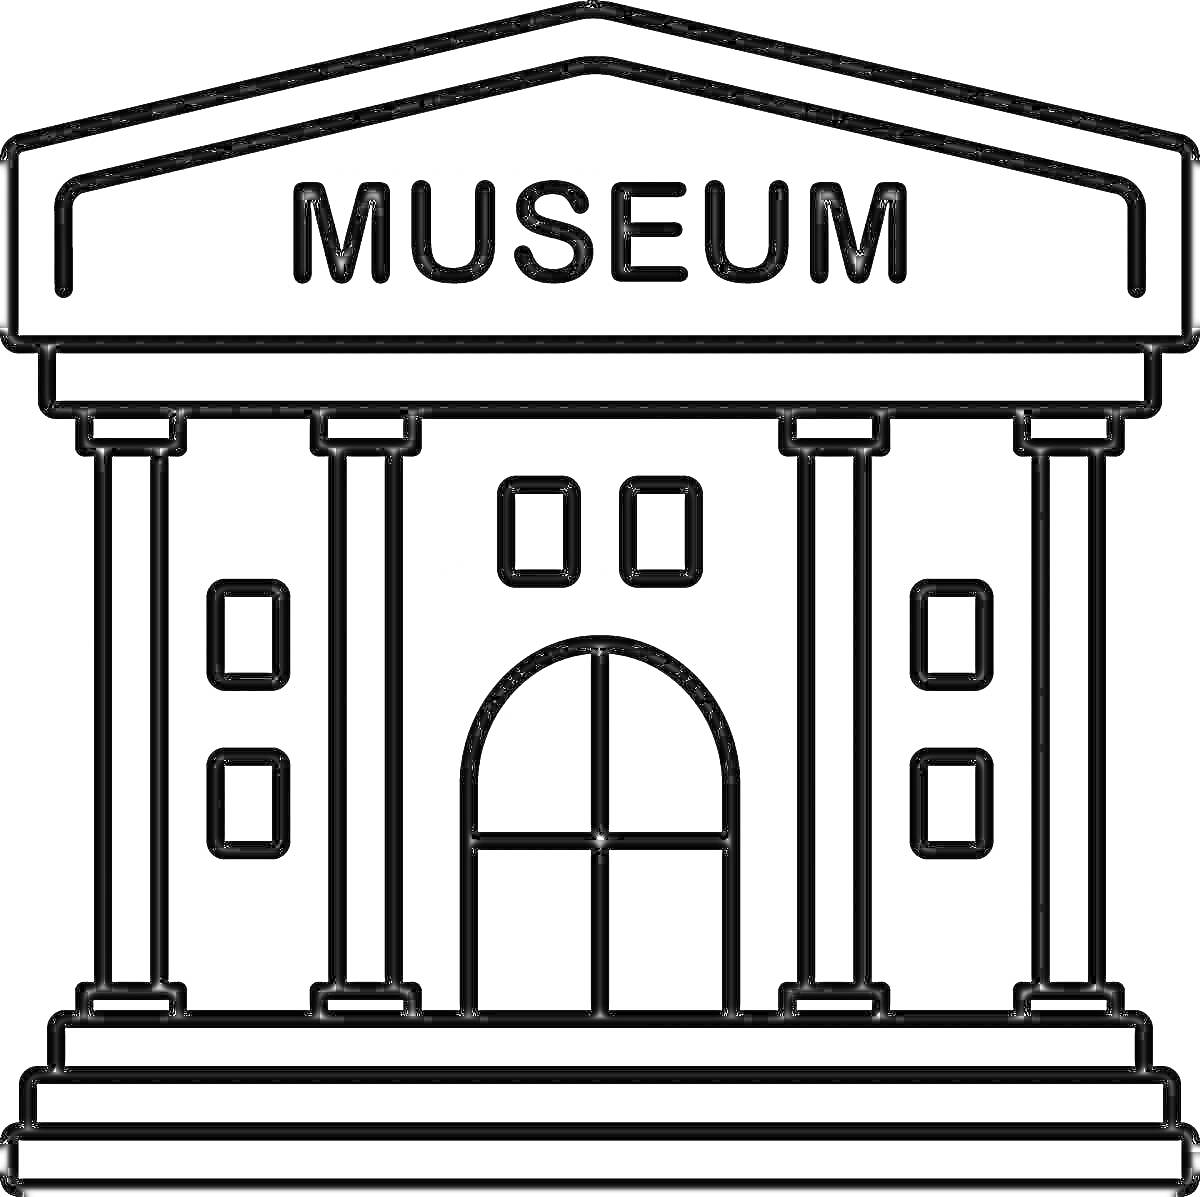 Фасад музея с колоннами и надписью MUSEUM